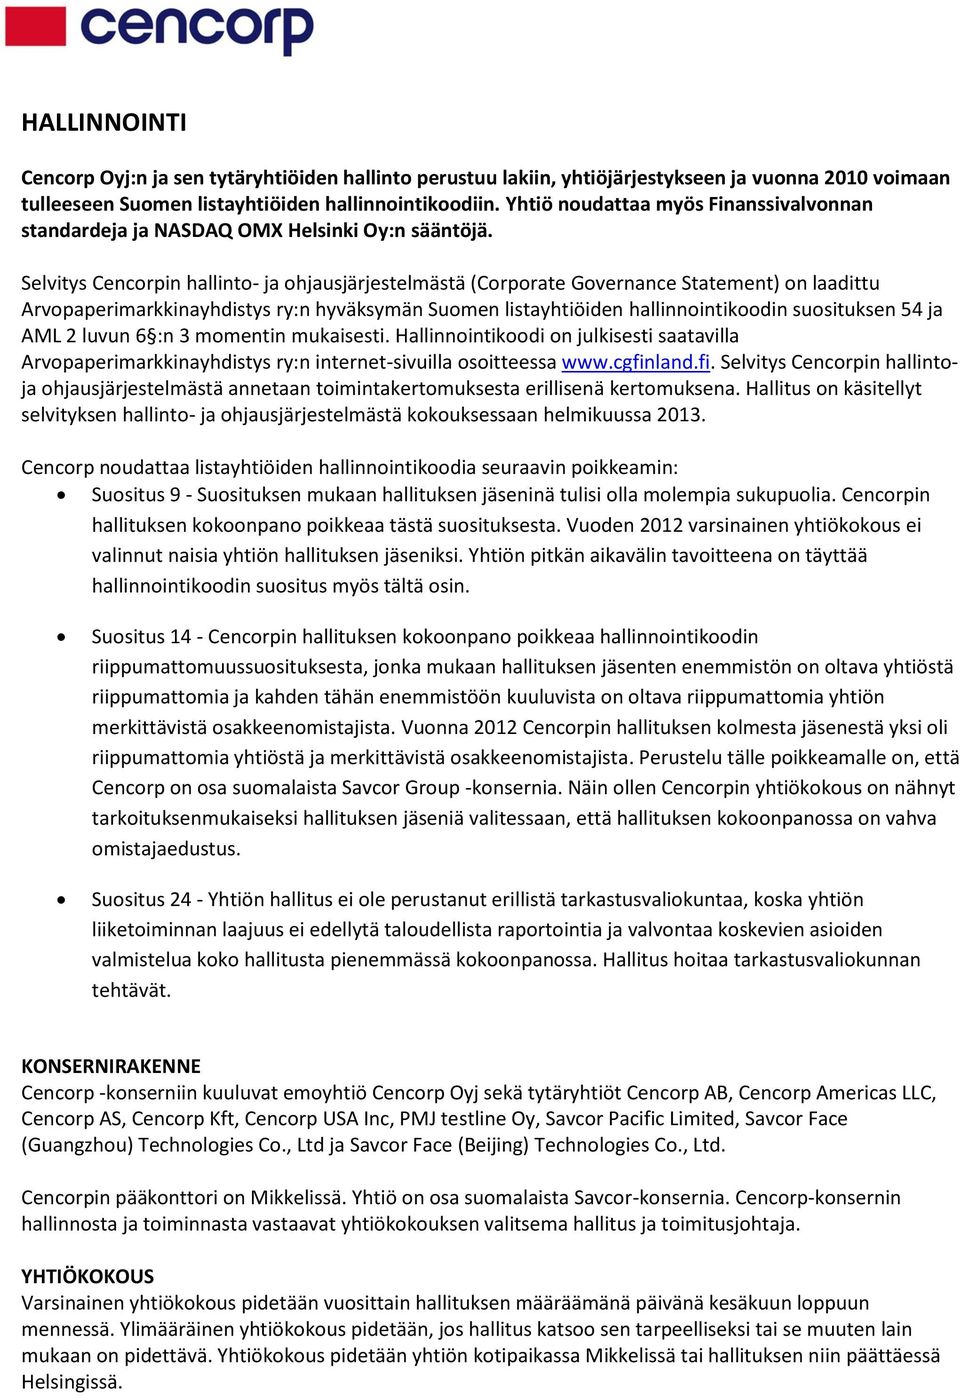 Selvitys Cencorpin hallinto- ja ohjausjärjestelmästä (Corporate Governance Statement) on laadittu Arvopaperimarkkinayhdistys ry:n hyväksymän Suomen listayhtiöiden hallinnointikoodin suosituksen 54 ja